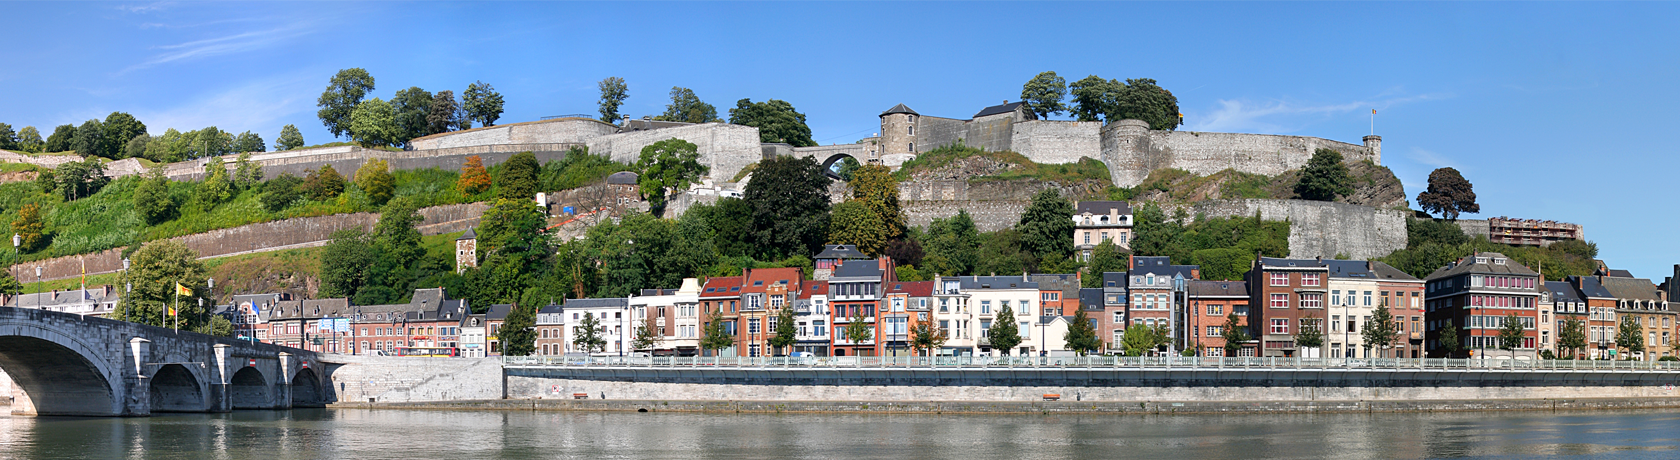 Namur.png#asset:240